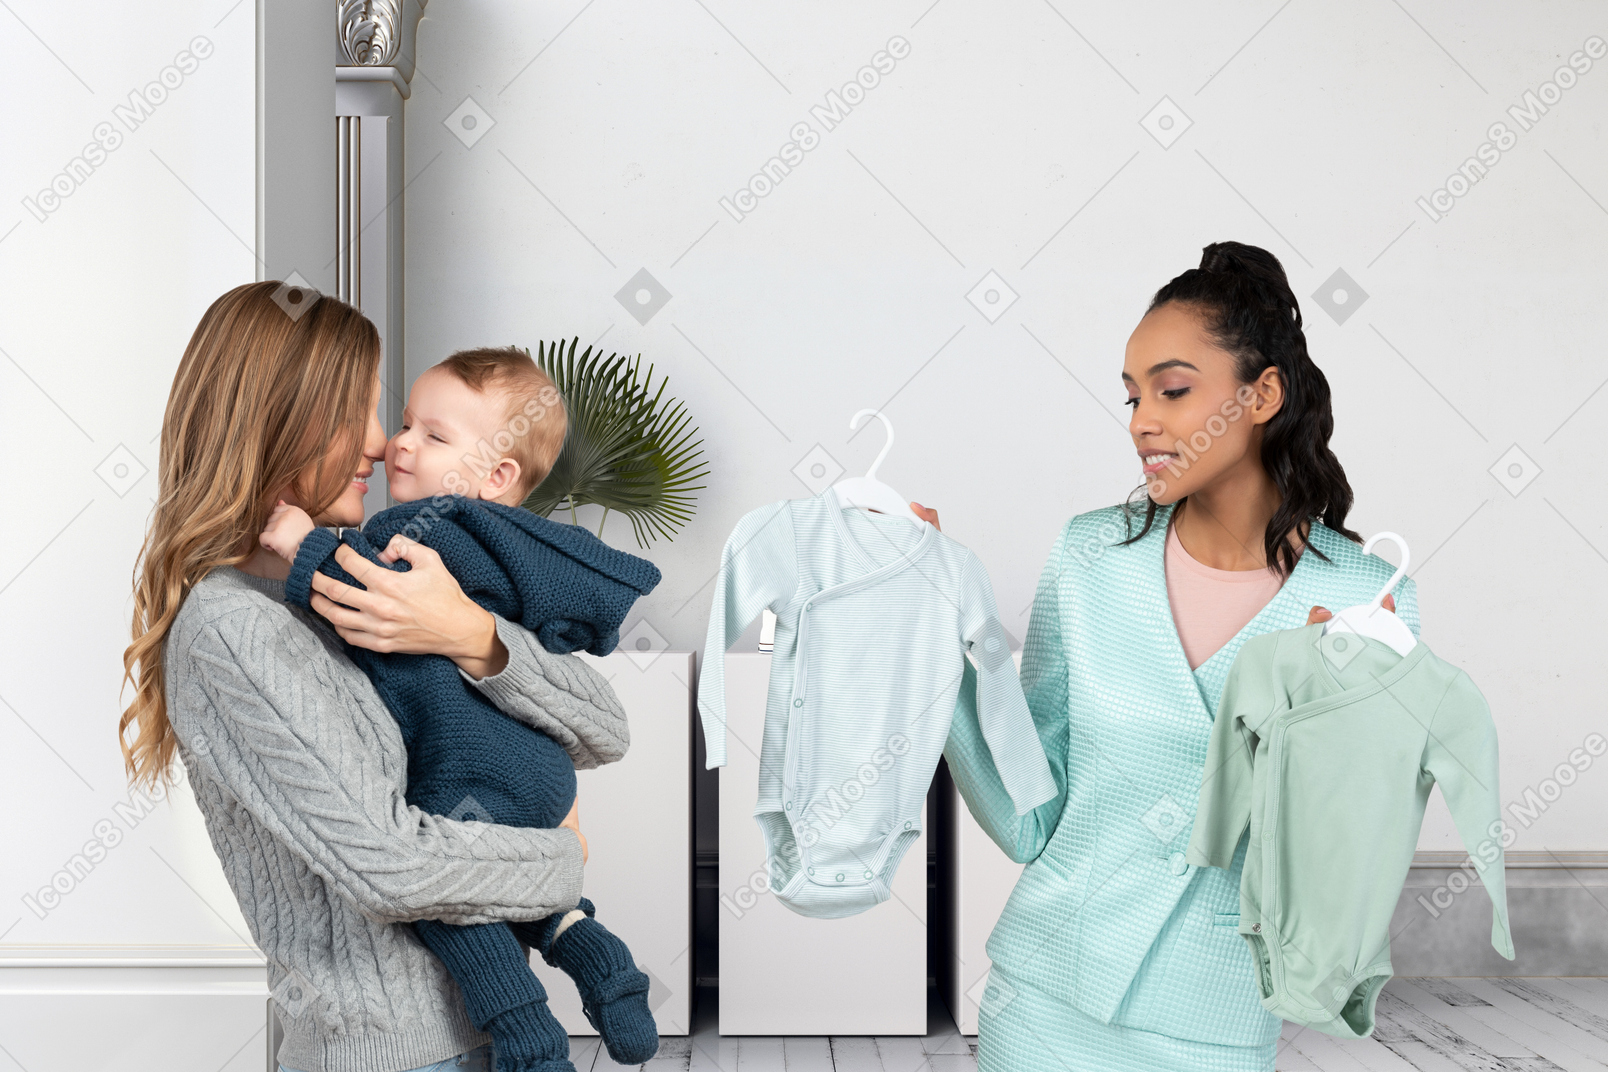 Femme avec bébé achetant des vêtements